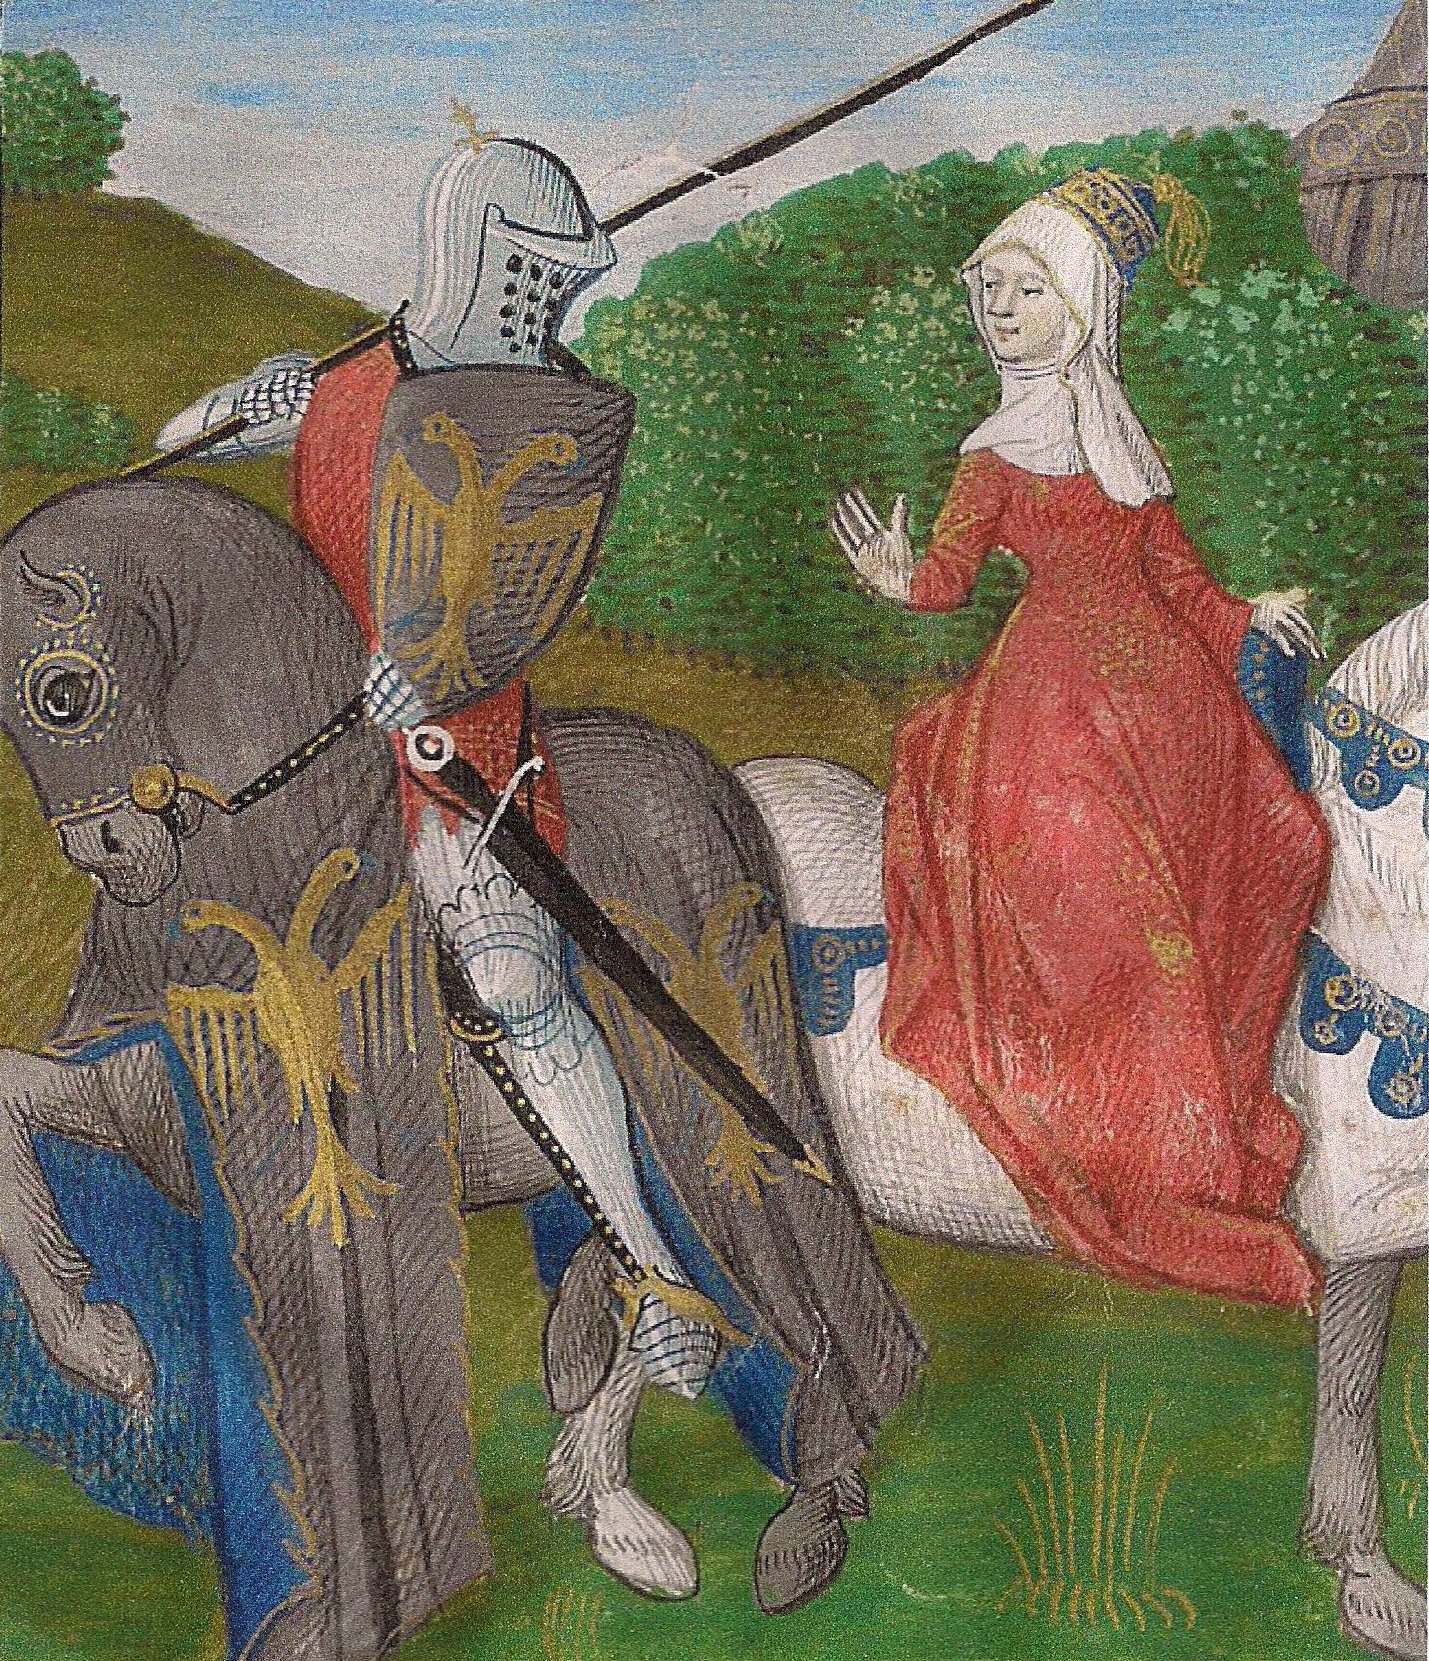 Читать про рыцарей. Шевалье рыцарь в средневековье. Рыцарь Ланселот. Средневековая миниатюра. Куртуазная живопись средневековья.